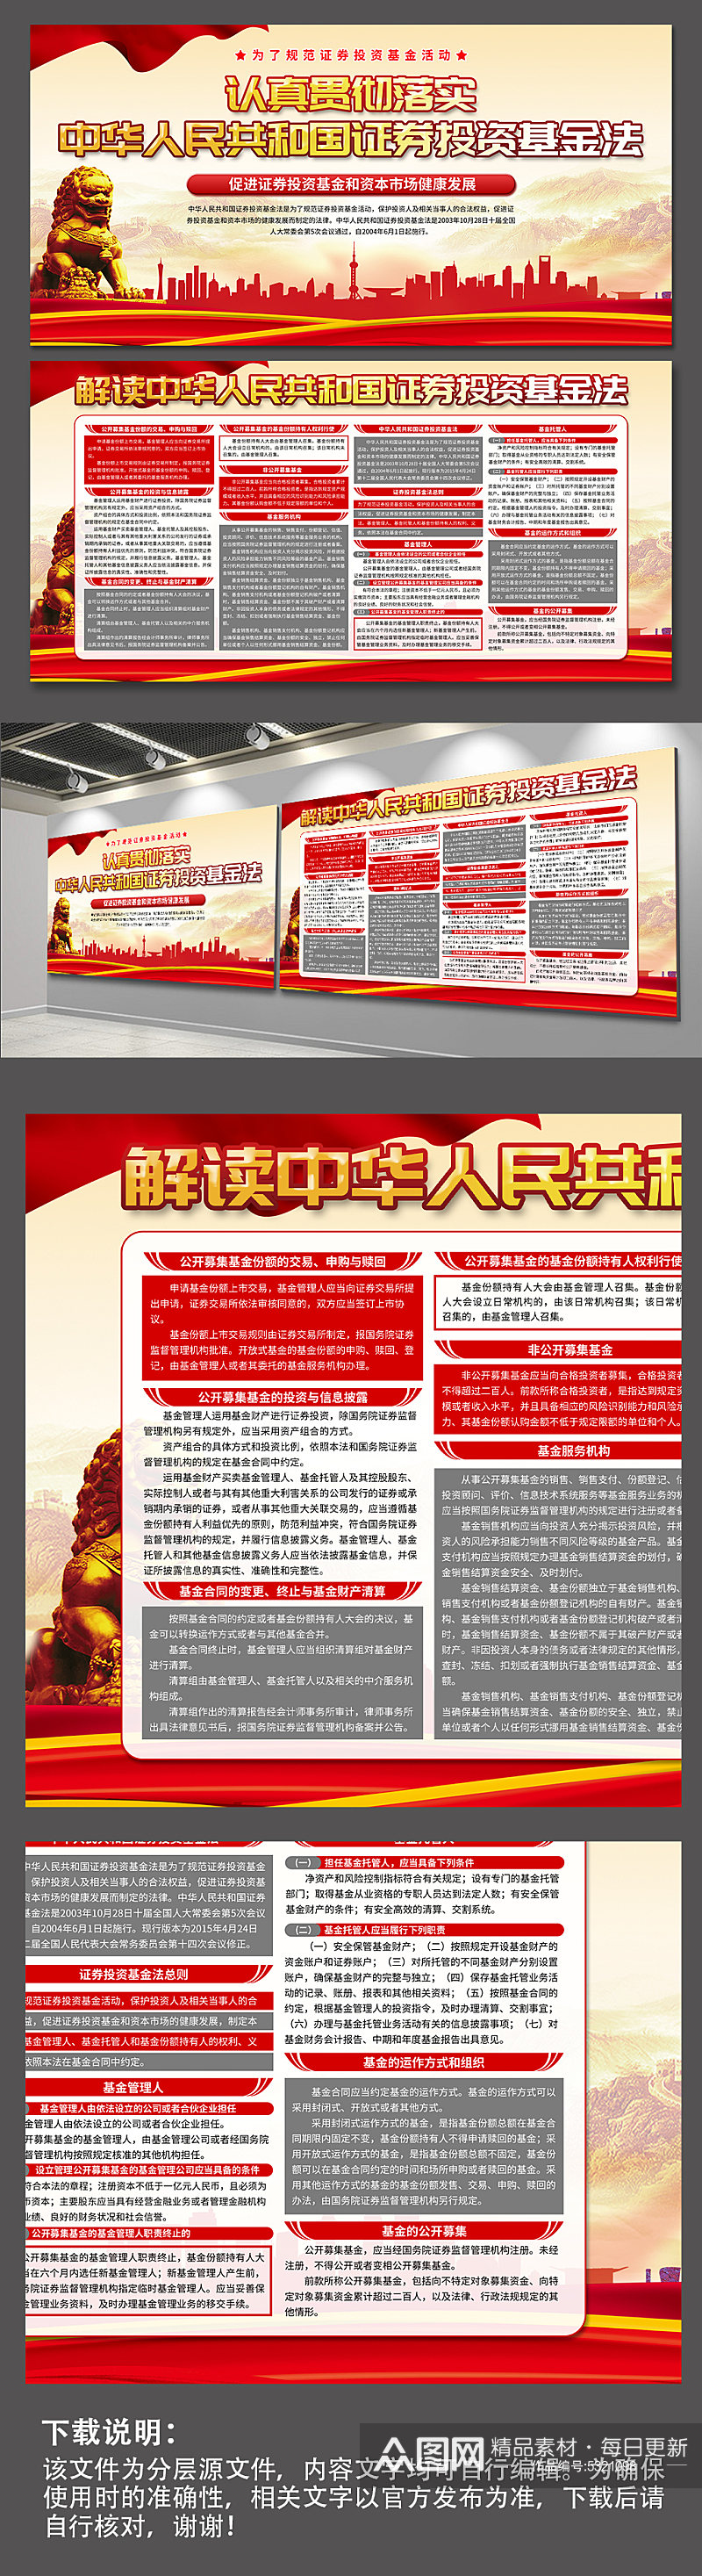 中华人民共和国证券投资基金法党建展板素材